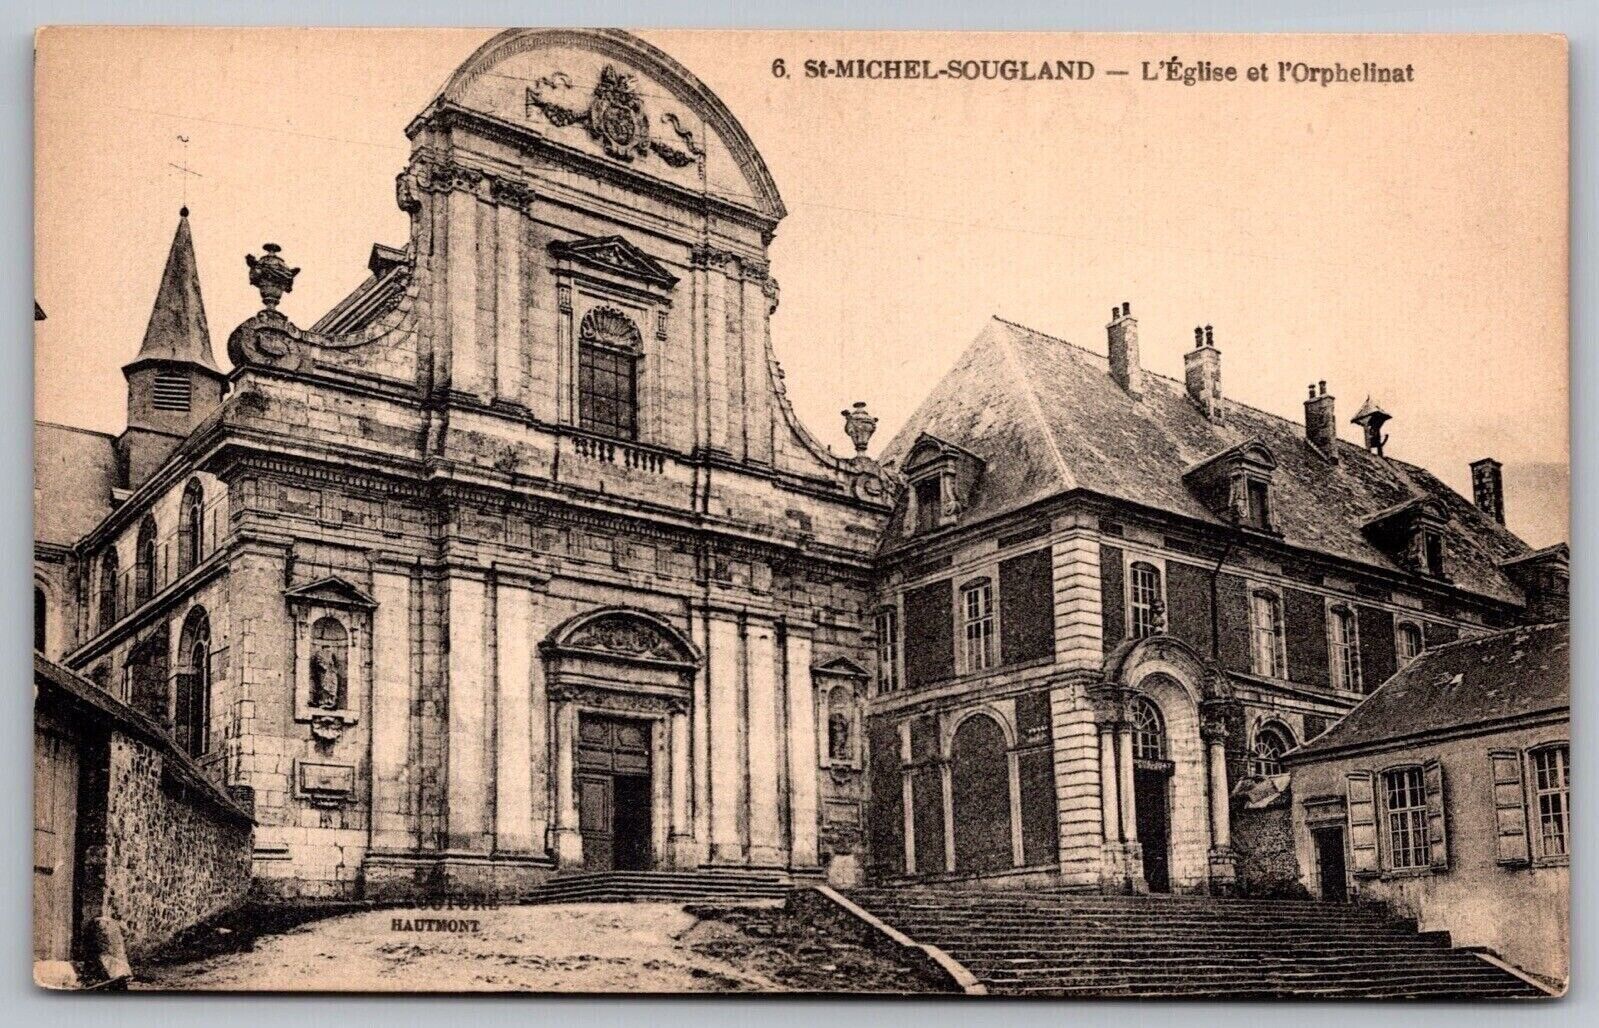 St Michel Sougland Antique Postcard